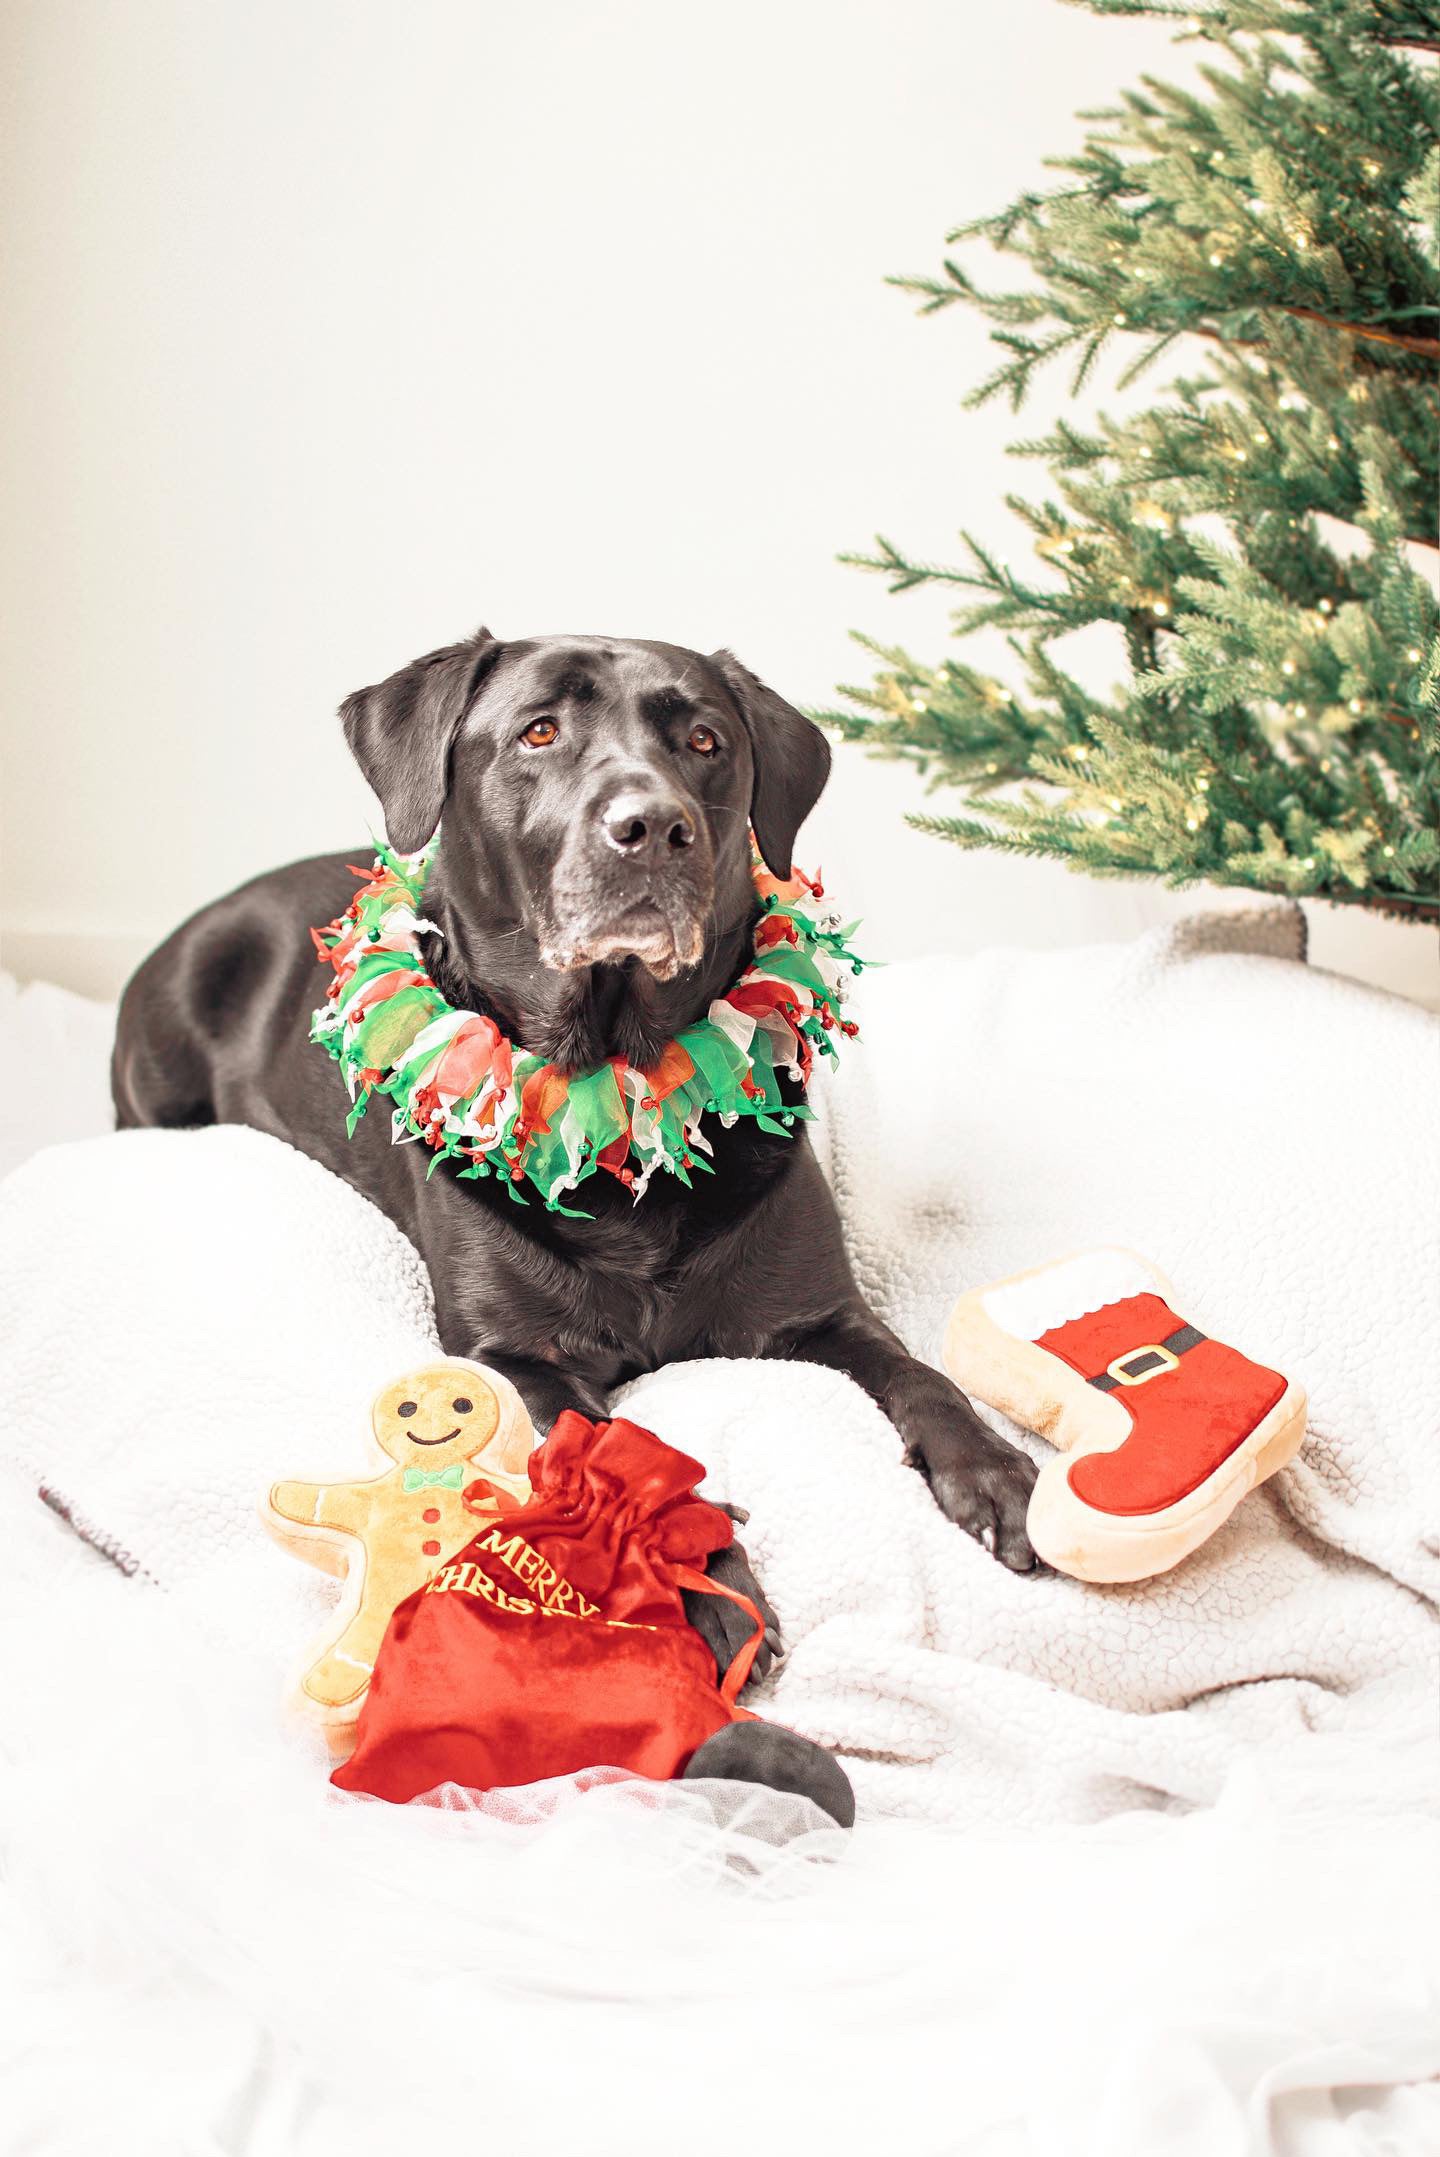 Midlee Christmas Jingle Bells Decorative Dog Collar